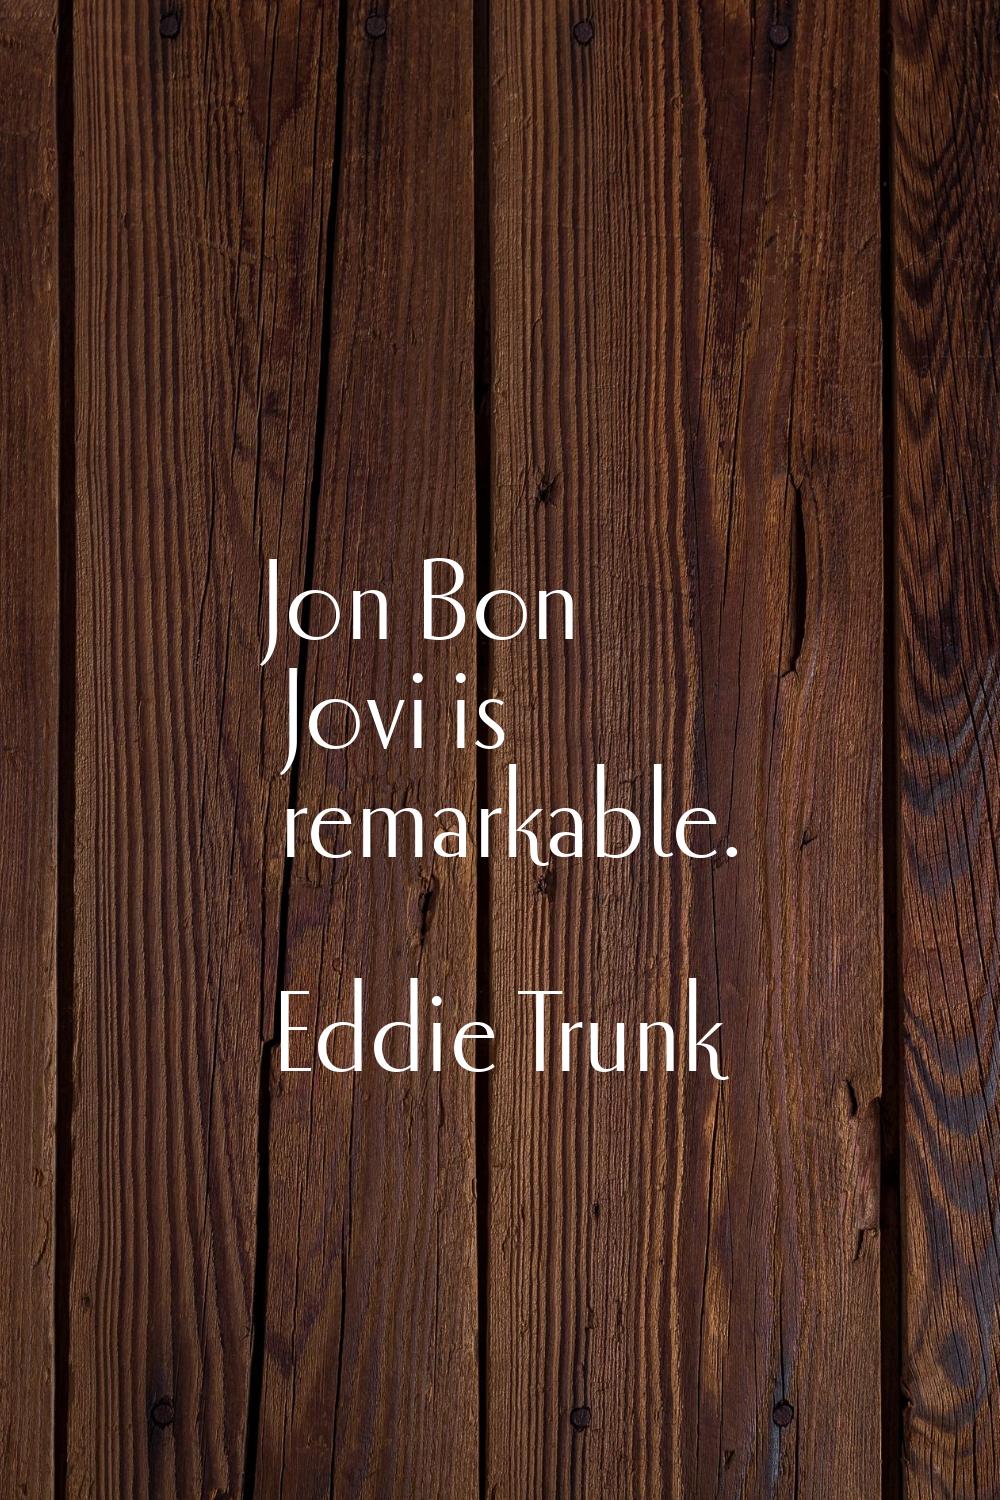 Jon Bon Jovi is remarkable.